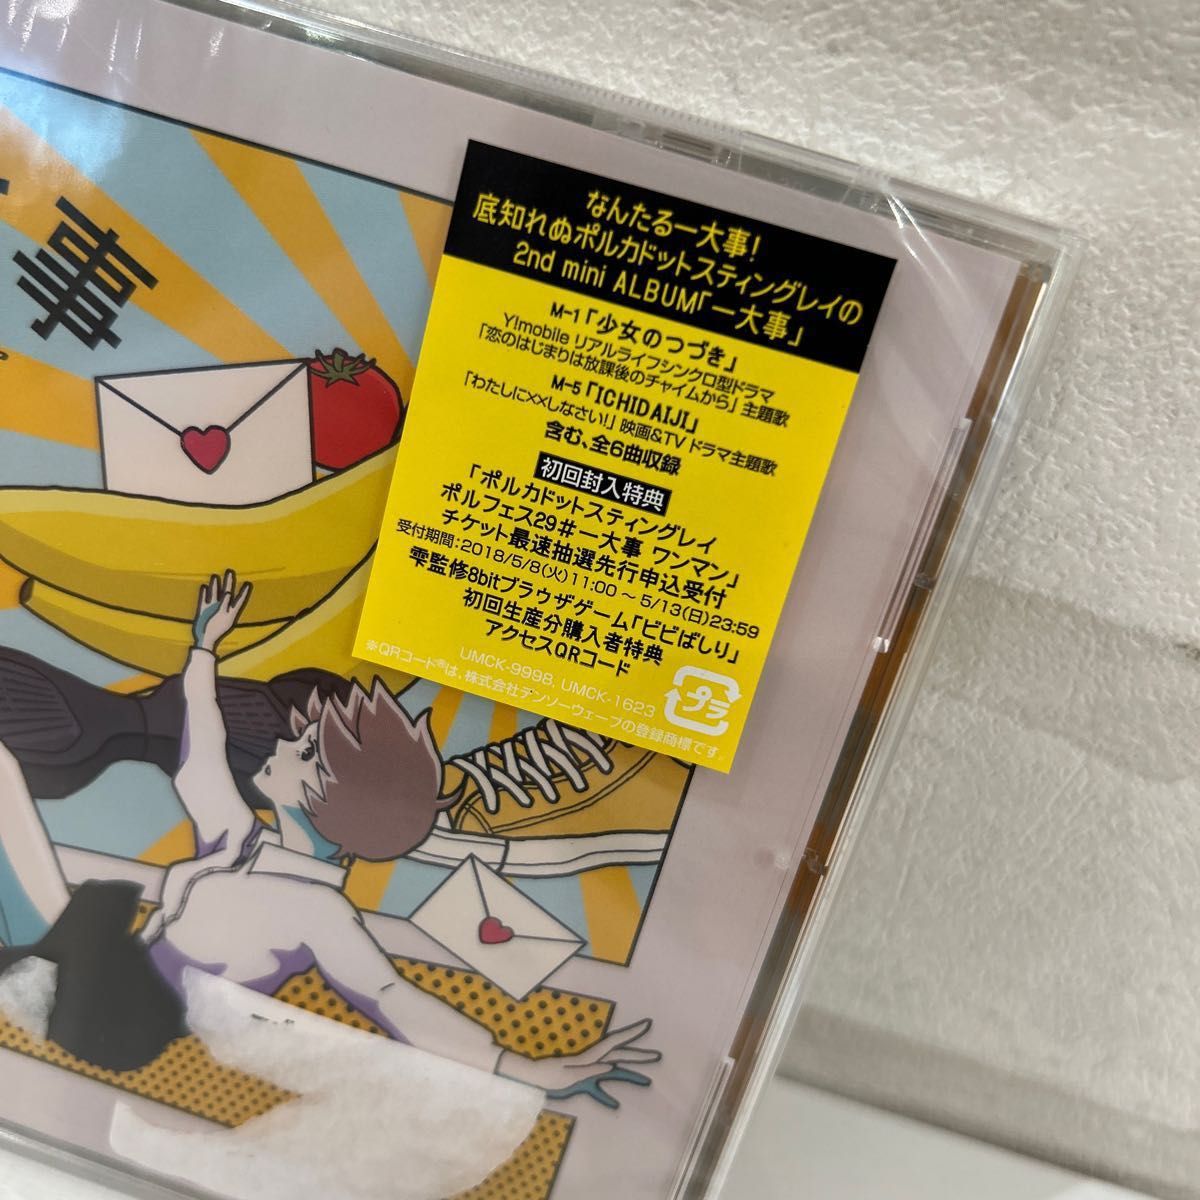 【合わせ買い不可】 一大事 (通常盤) CD ポルカドットスティングレイ